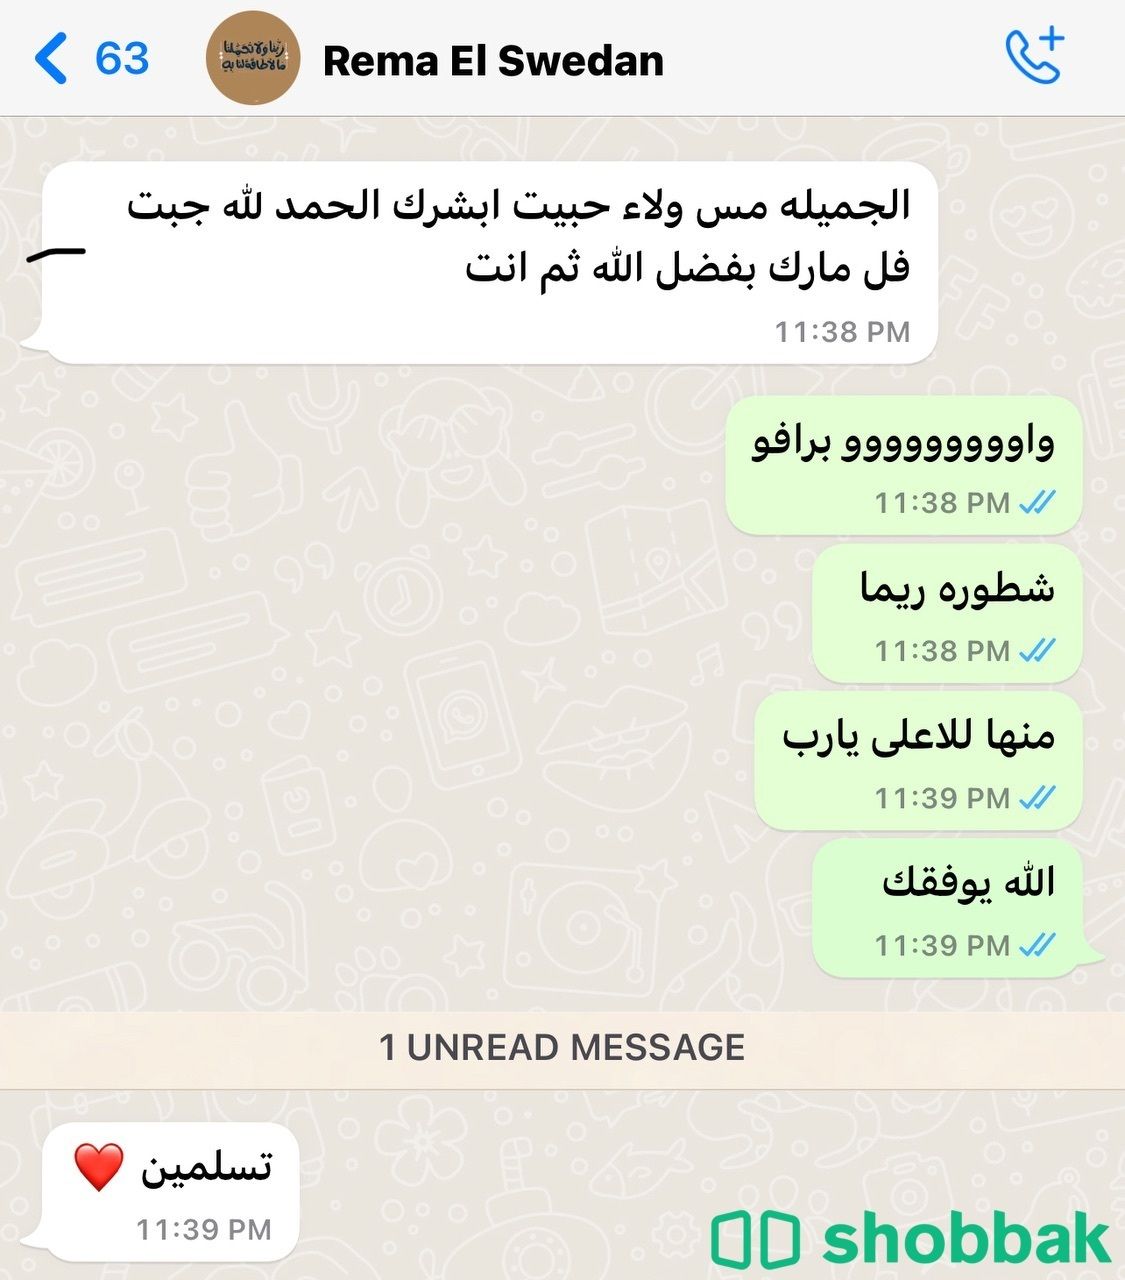 معلمة رياضيات بشمال الرياض خبره 12 عام Shobbak Saudi Arabia